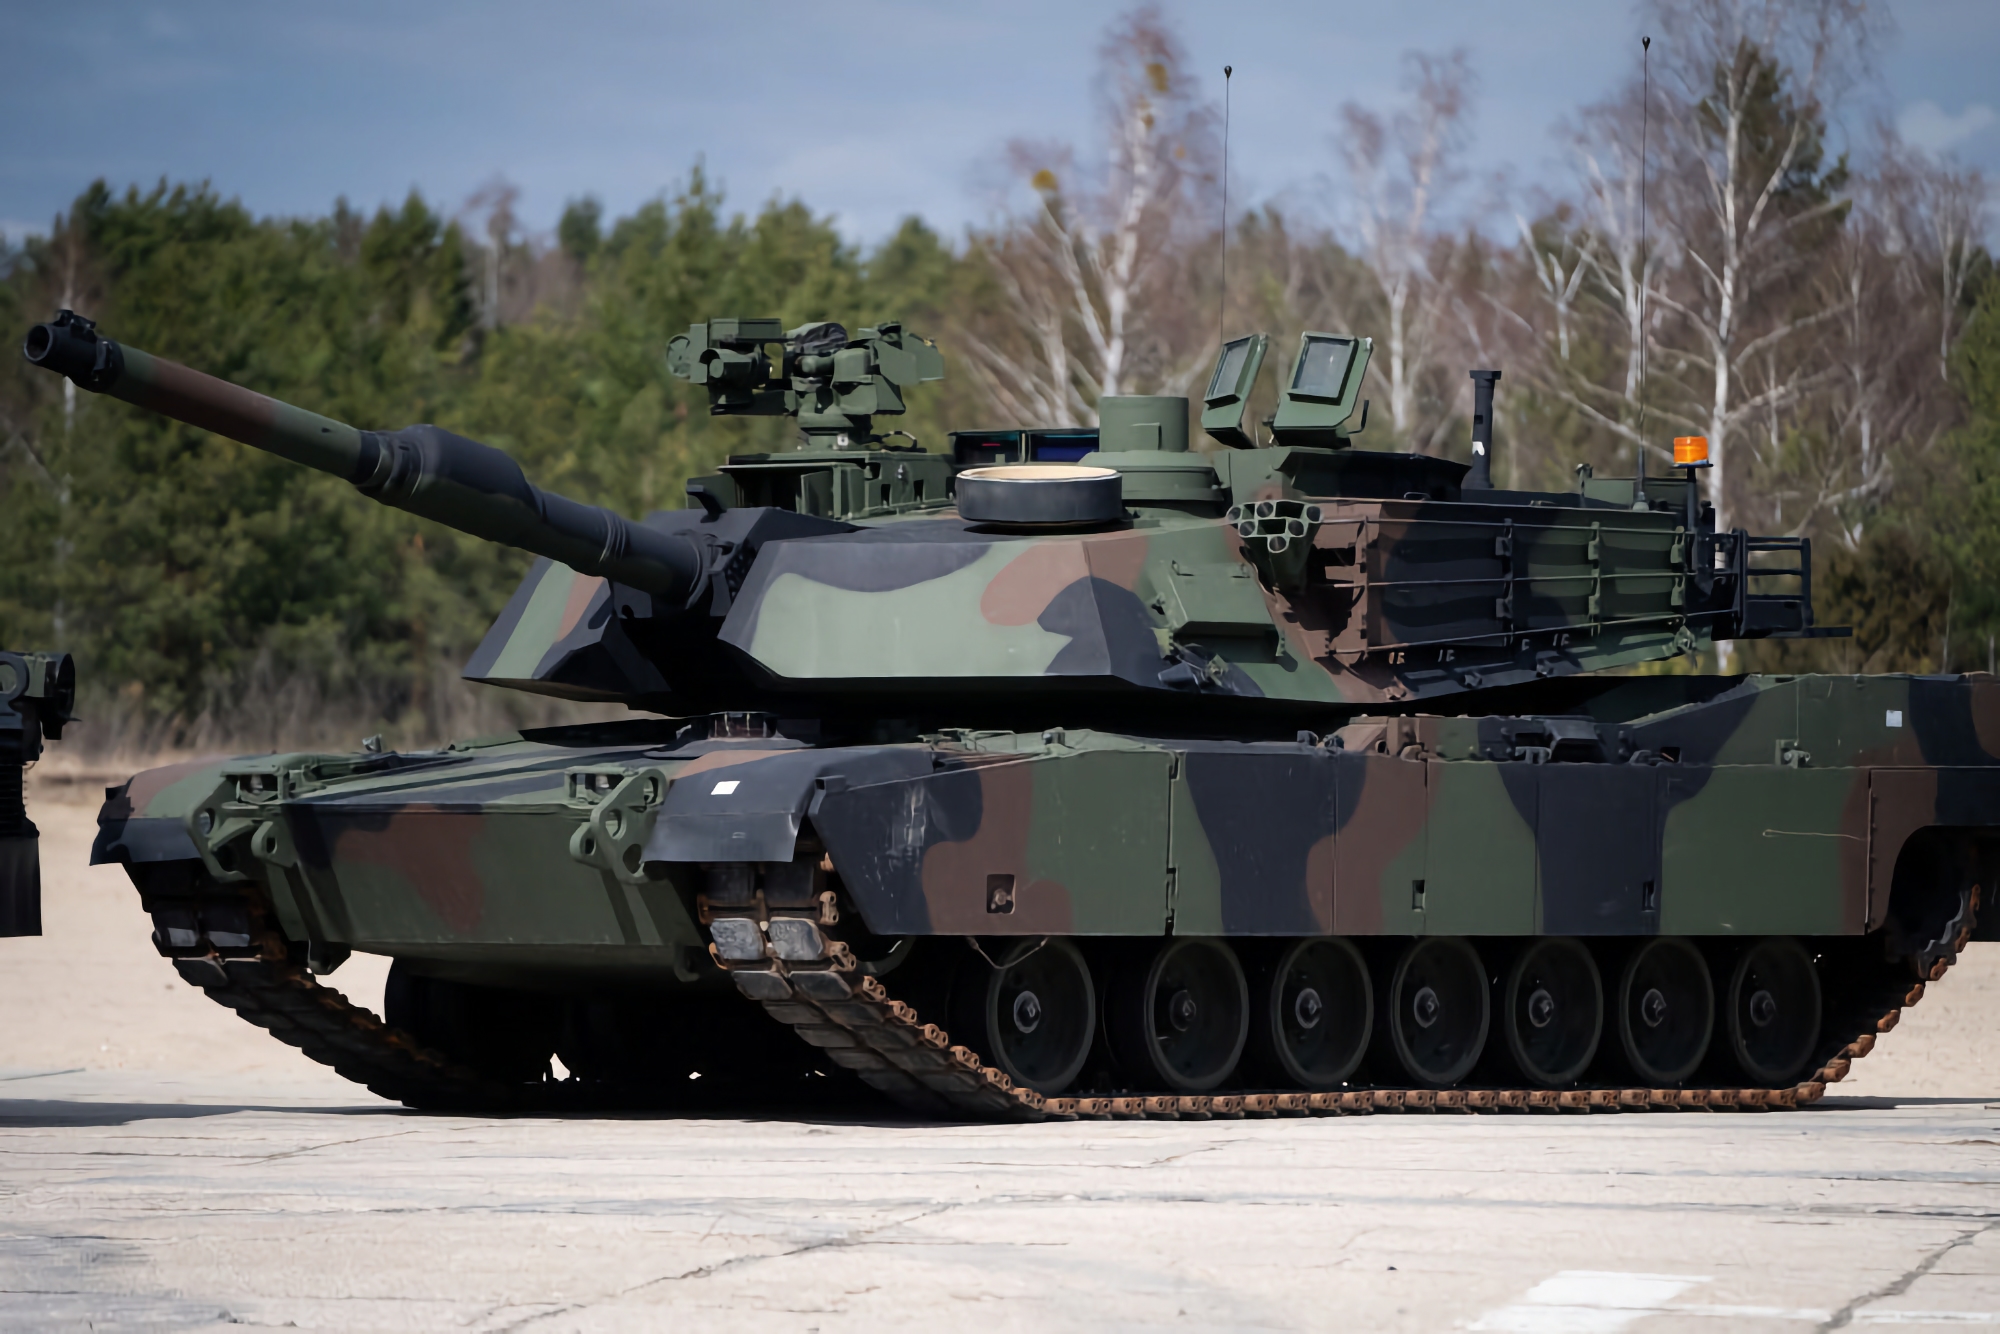 Ukraińskie wojsko zakończyło program szkoleniowy na czołgach M1 Abrams, a dostawy rozpoczną się wkrótce